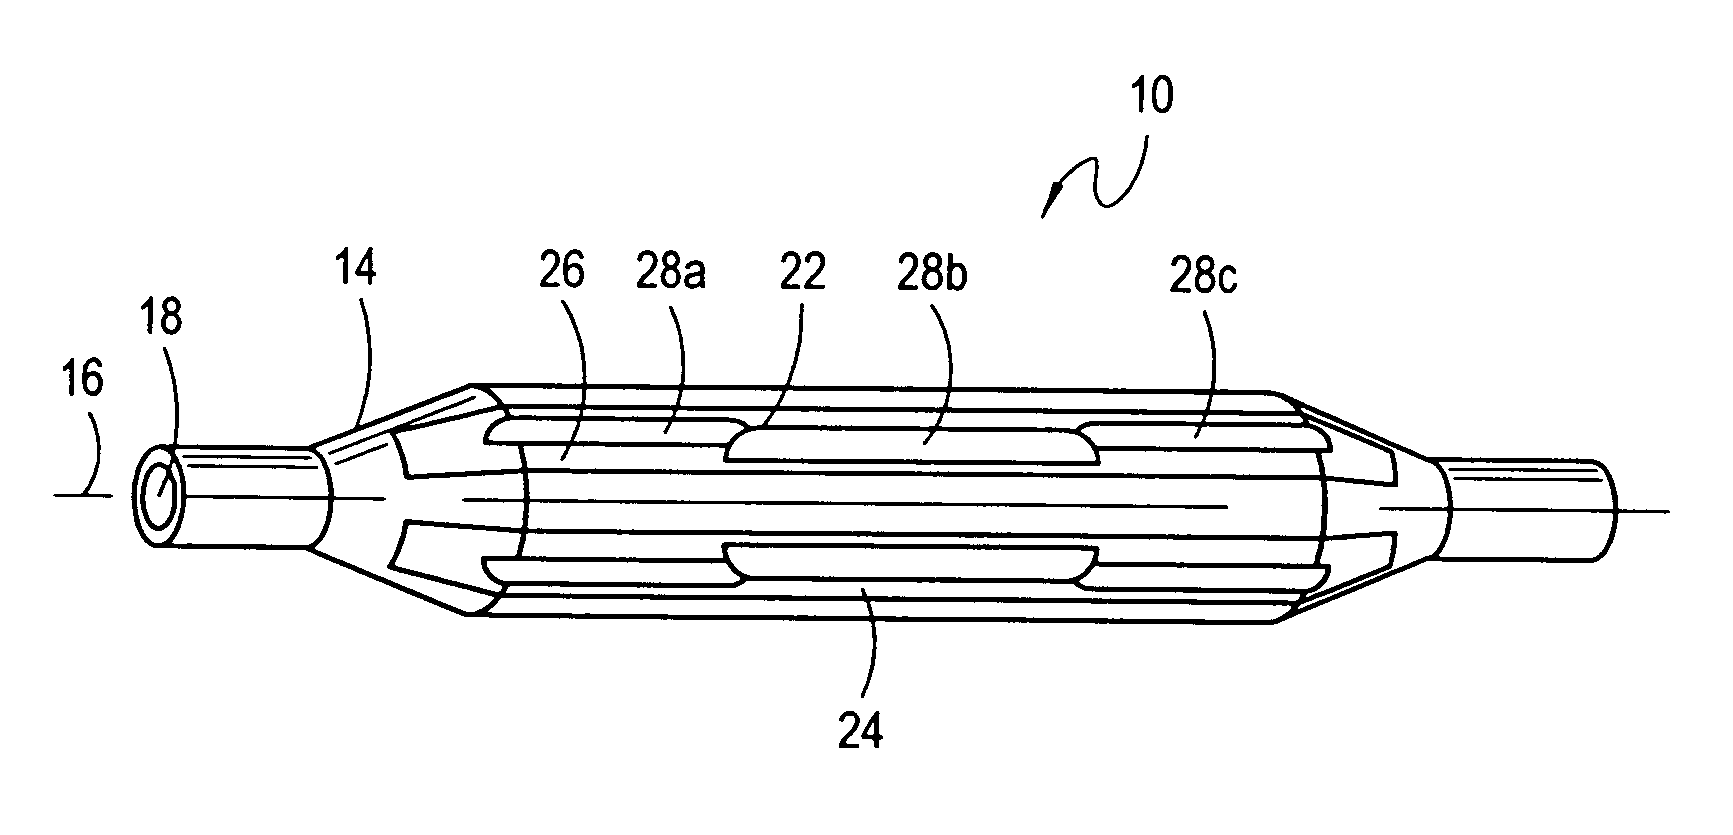 Segmented balloon catheter blade